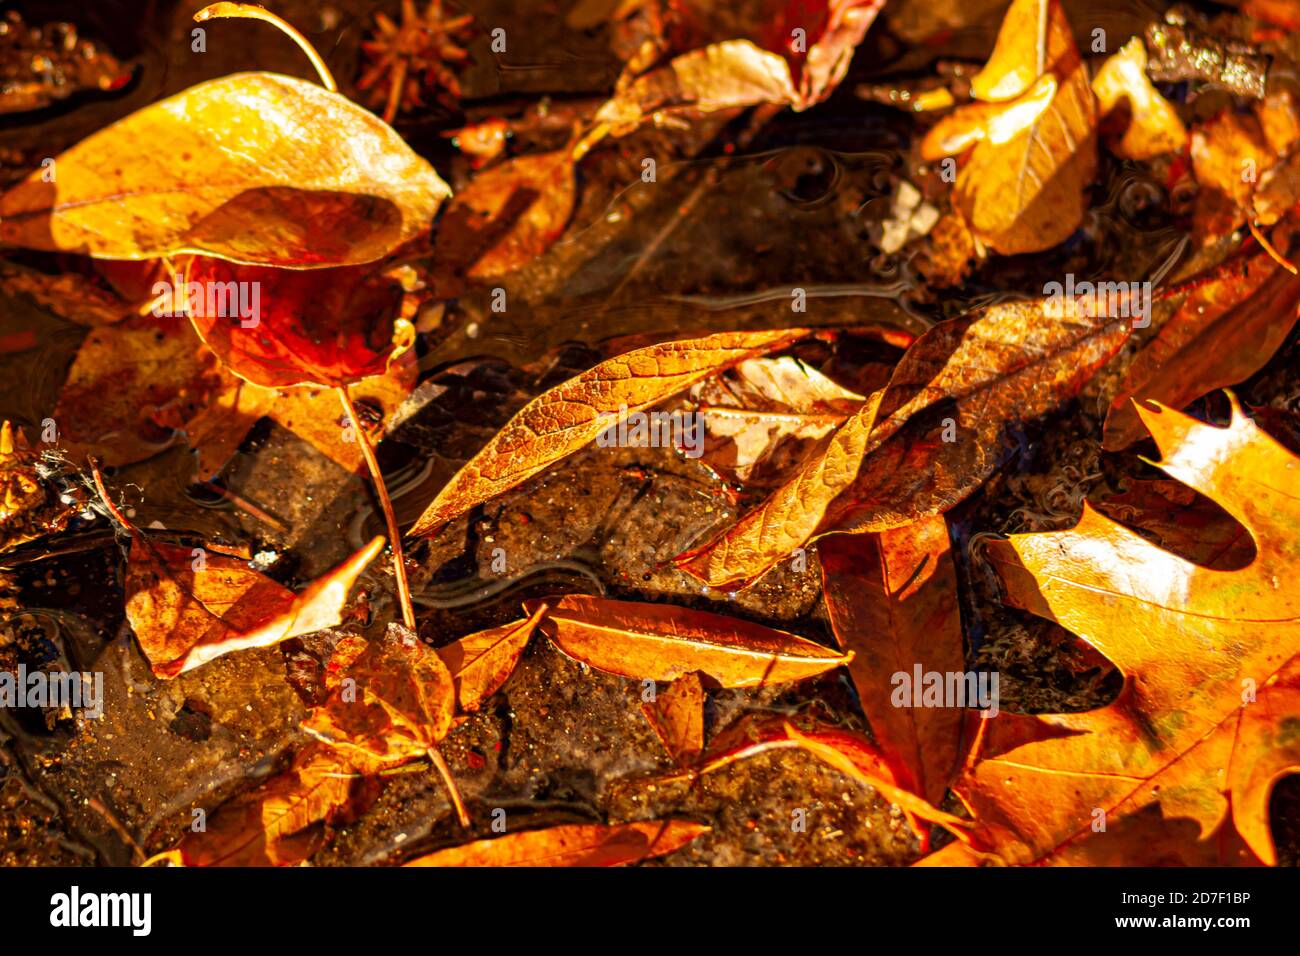 Nahaufnahme vereinzeltes Bild von gefallenen Blättern, die den Waldboden im Herbst bedecken. Verschiedene braune, rote und orange Blätter liegen nebeneinander auf schlammigem Boden Stockfoto